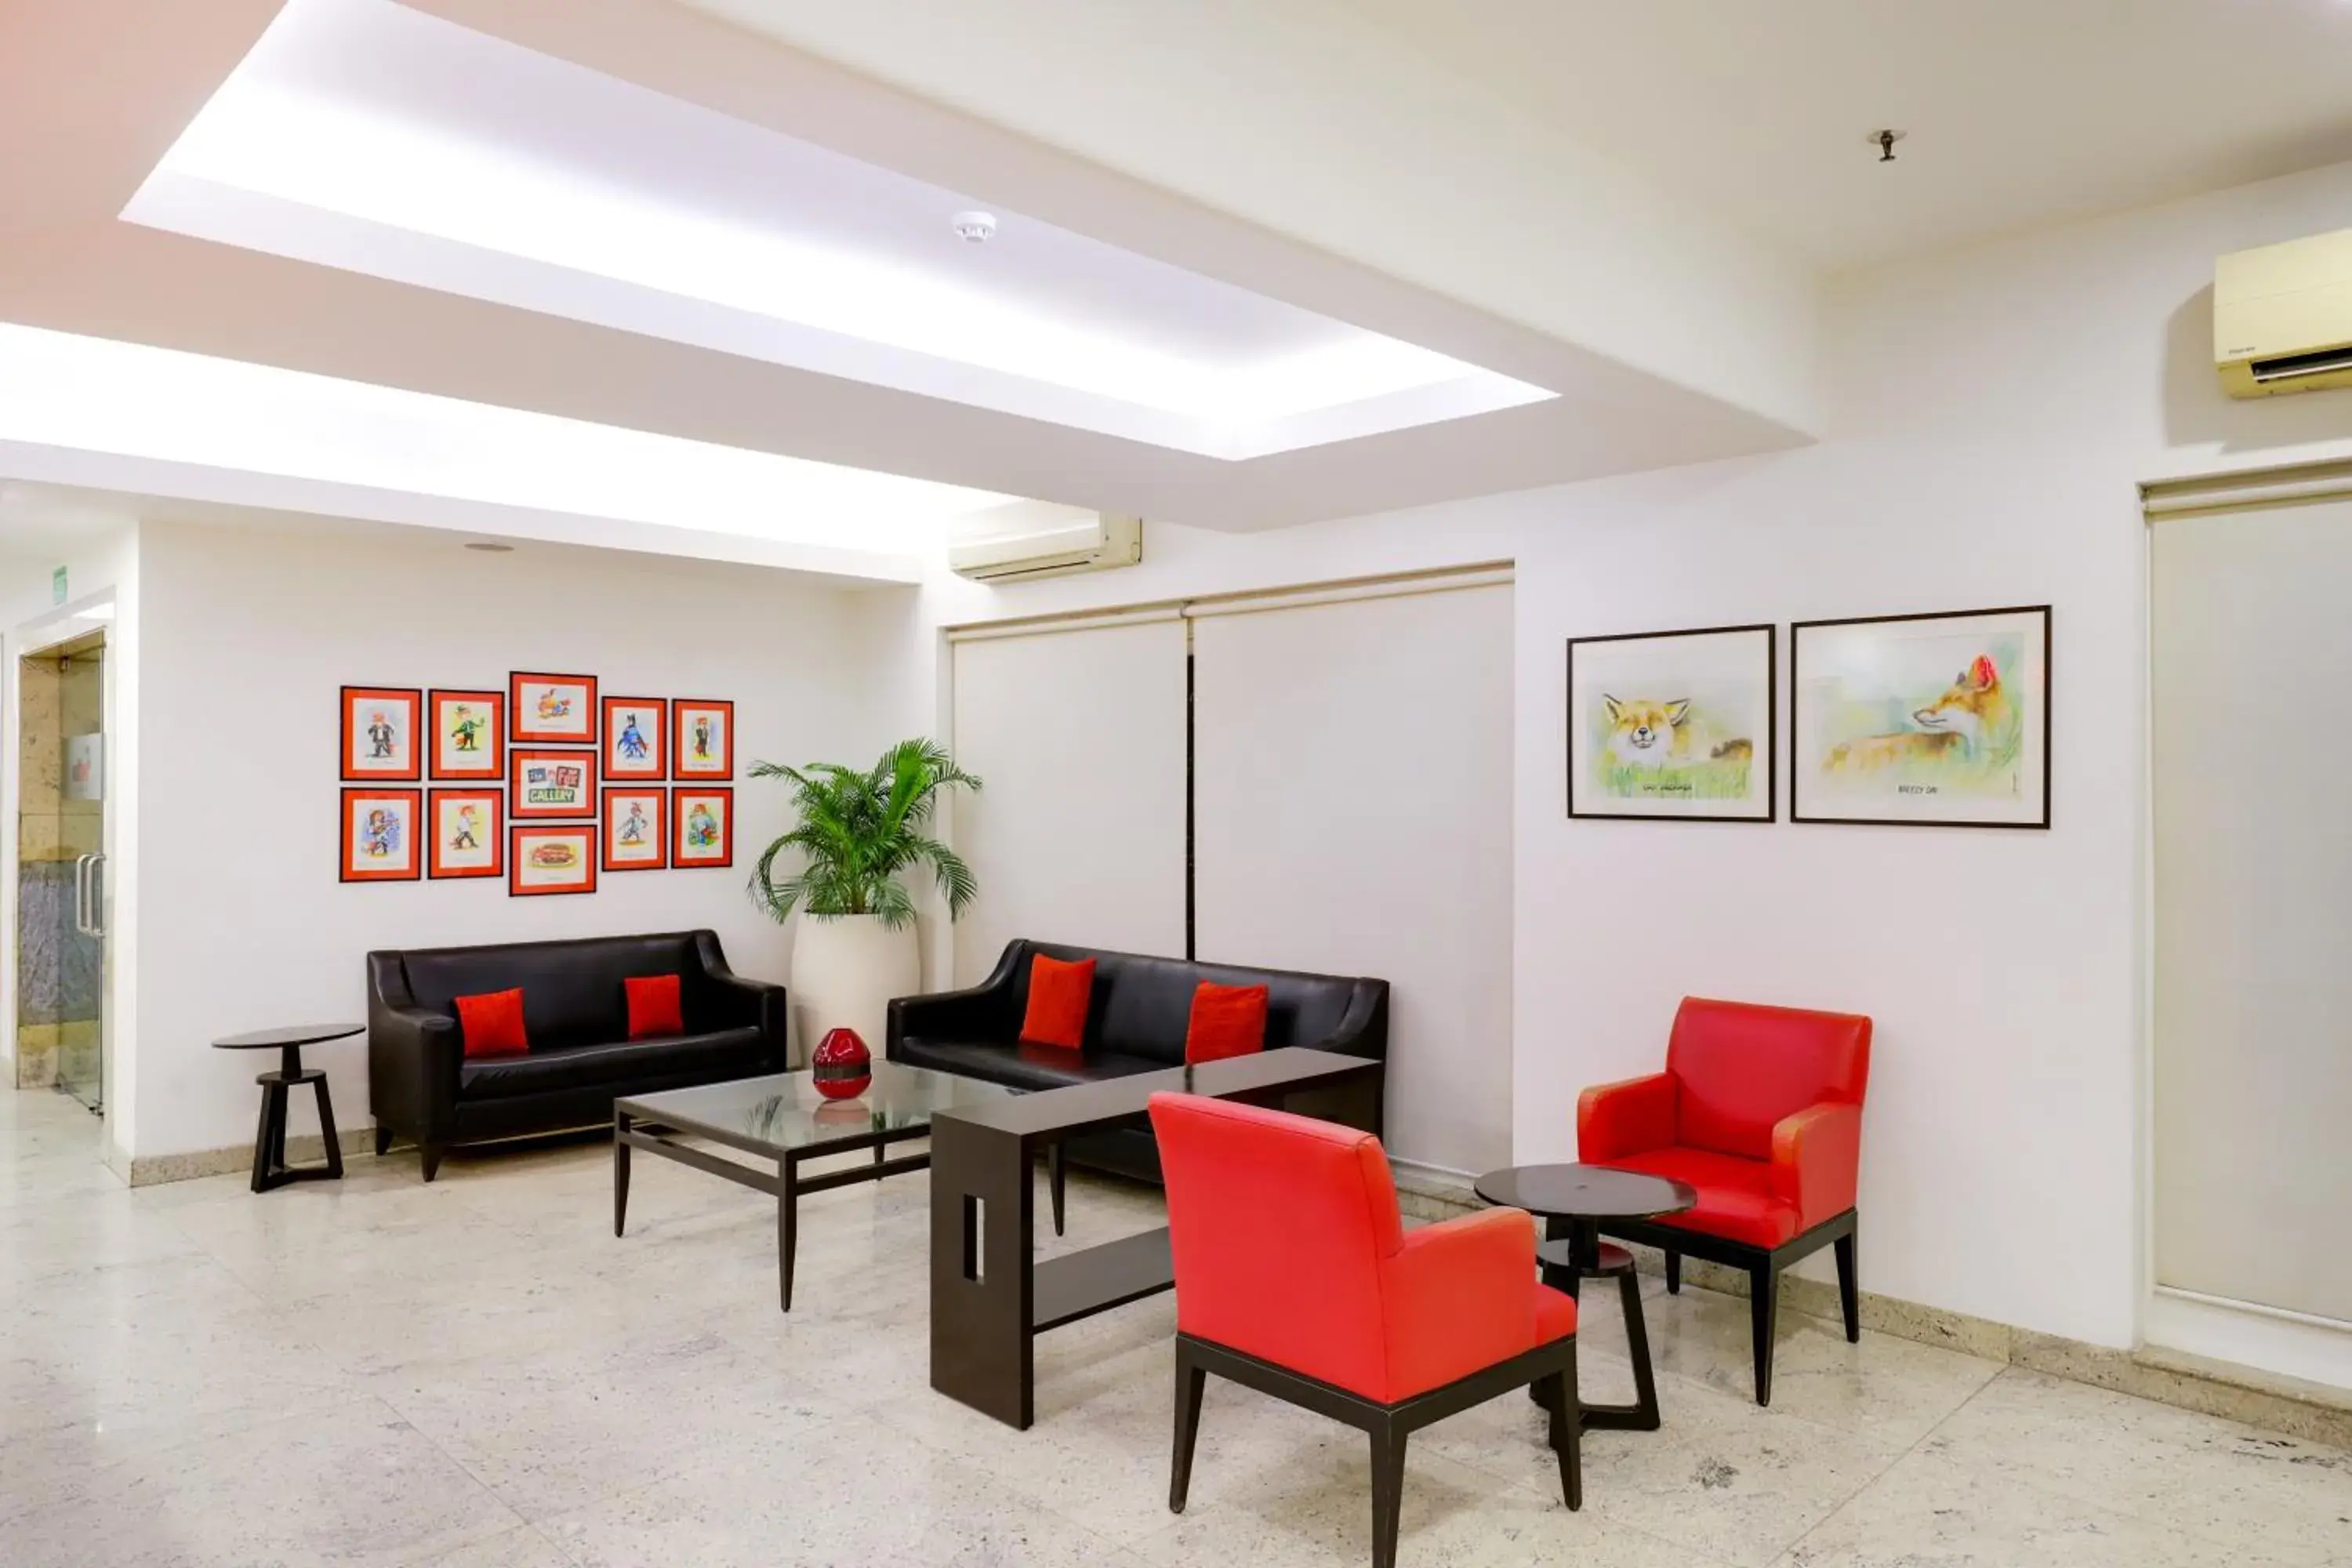 Lobby or reception, Lobby/Reception in Red Fox Hotel, East Delhi